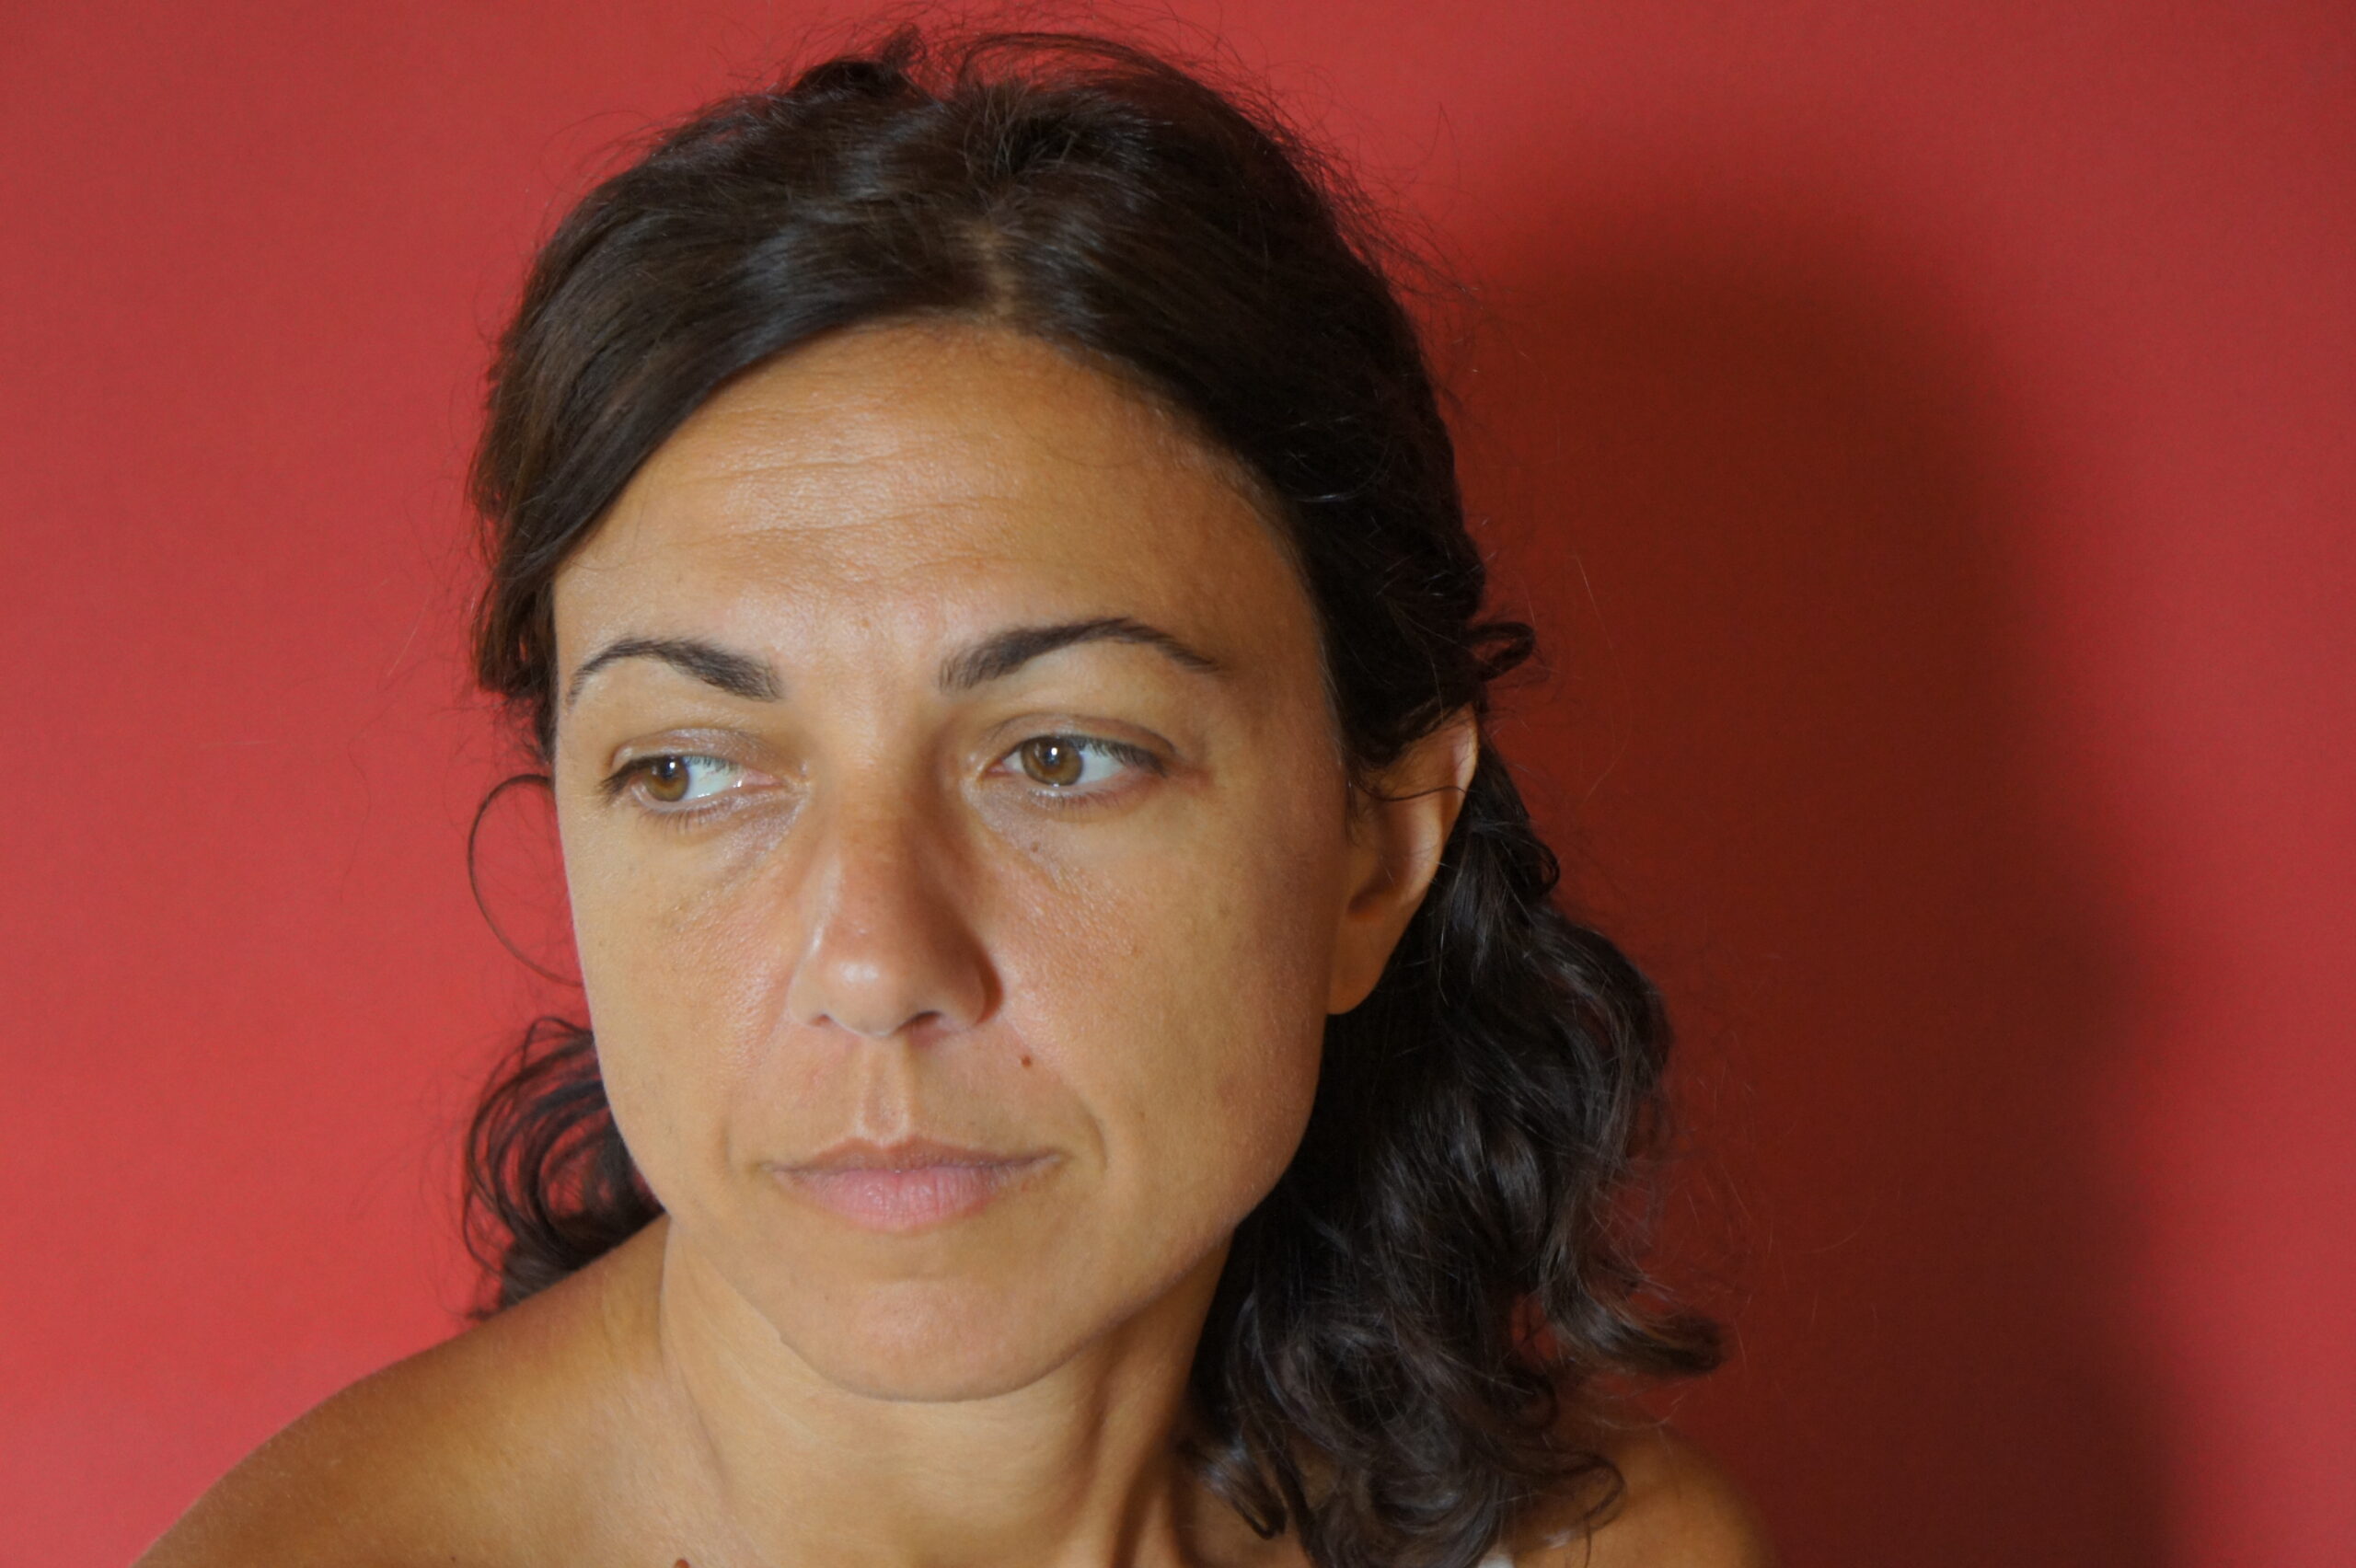 Intervista ad Alessandra Sarchi, autrice di "L'amore normale"